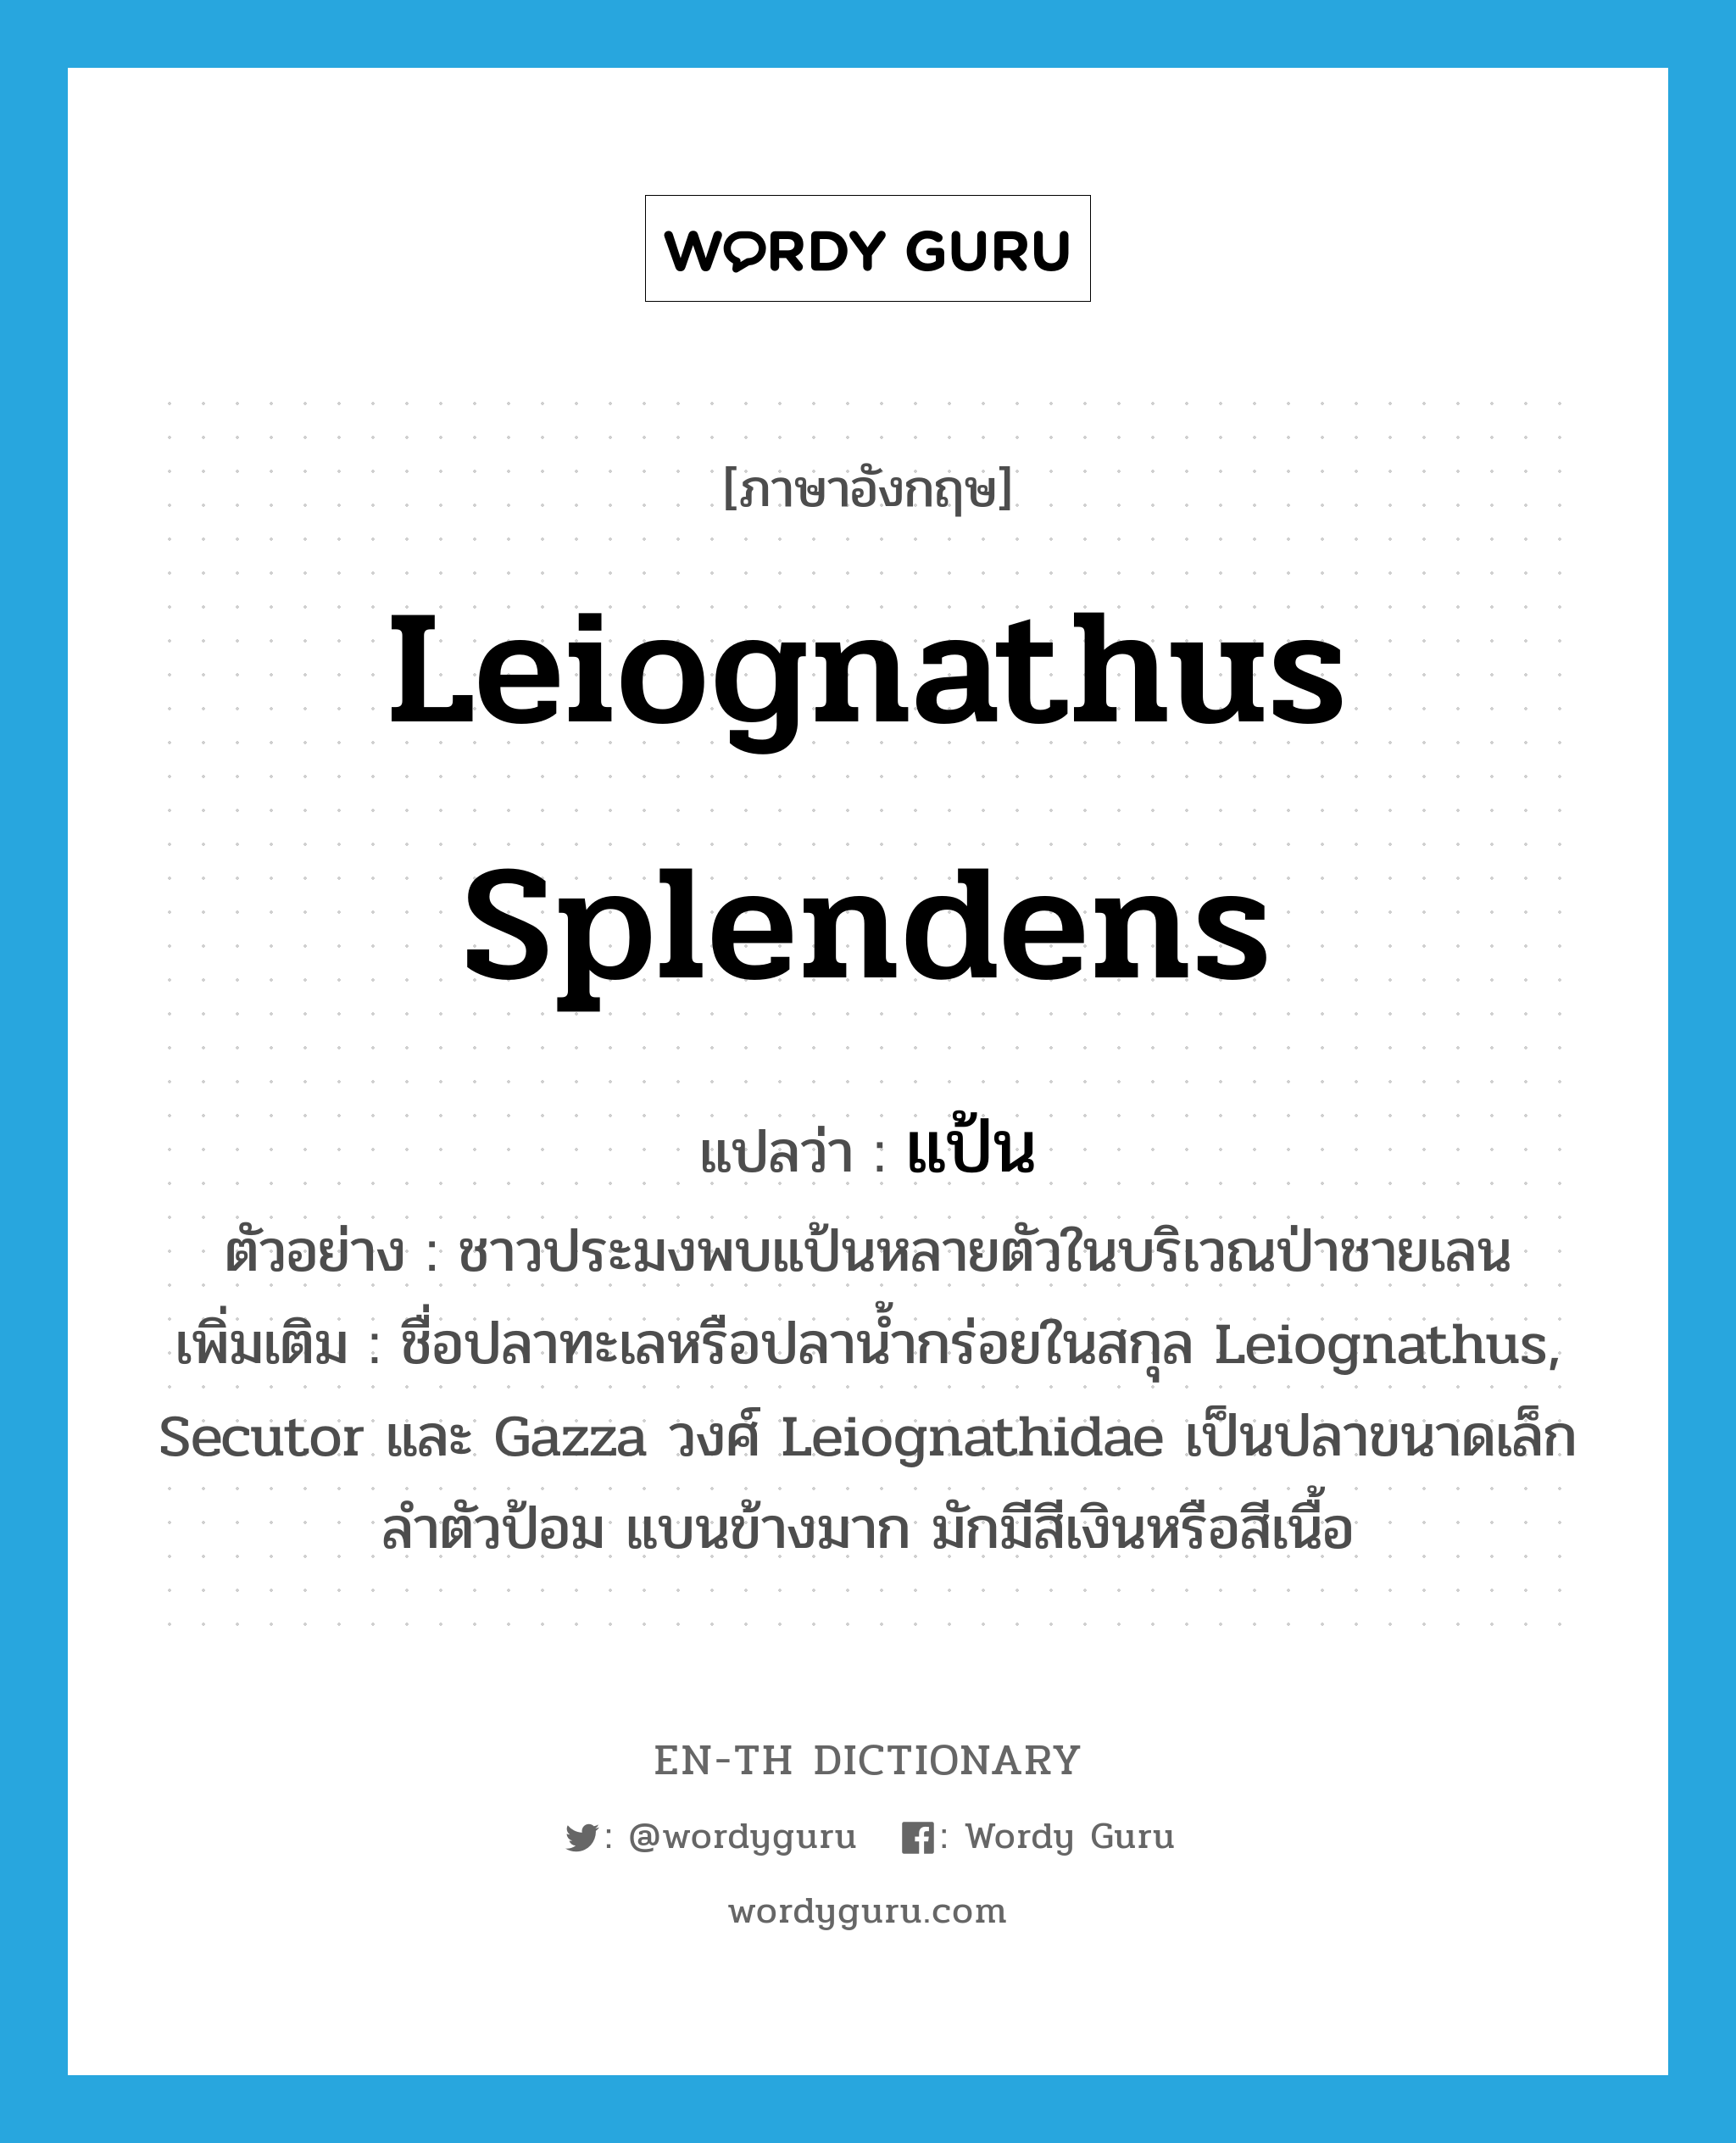 แป้น ภาษาอังกฤษ?, คำศัพท์ภาษาอังกฤษ แป้น แปลว่า Leiognathus splendens ประเภท N ตัวอย่าง ชาวประมงพบแป้นหลายตัวในบริเวณป่าชายเลน เพิ่มเติม ชื่อปลาทะเลหรือปลาน้ำกร่อยในสกุล Leiognathus, Secutor และ Gazza วงศ์ Leiognathidae เป็นปลาขนาดเล็ก ลำตัวป้อม แบนข้างมาก มักมีสีเงินหรือสีเนื้อ หมวด N